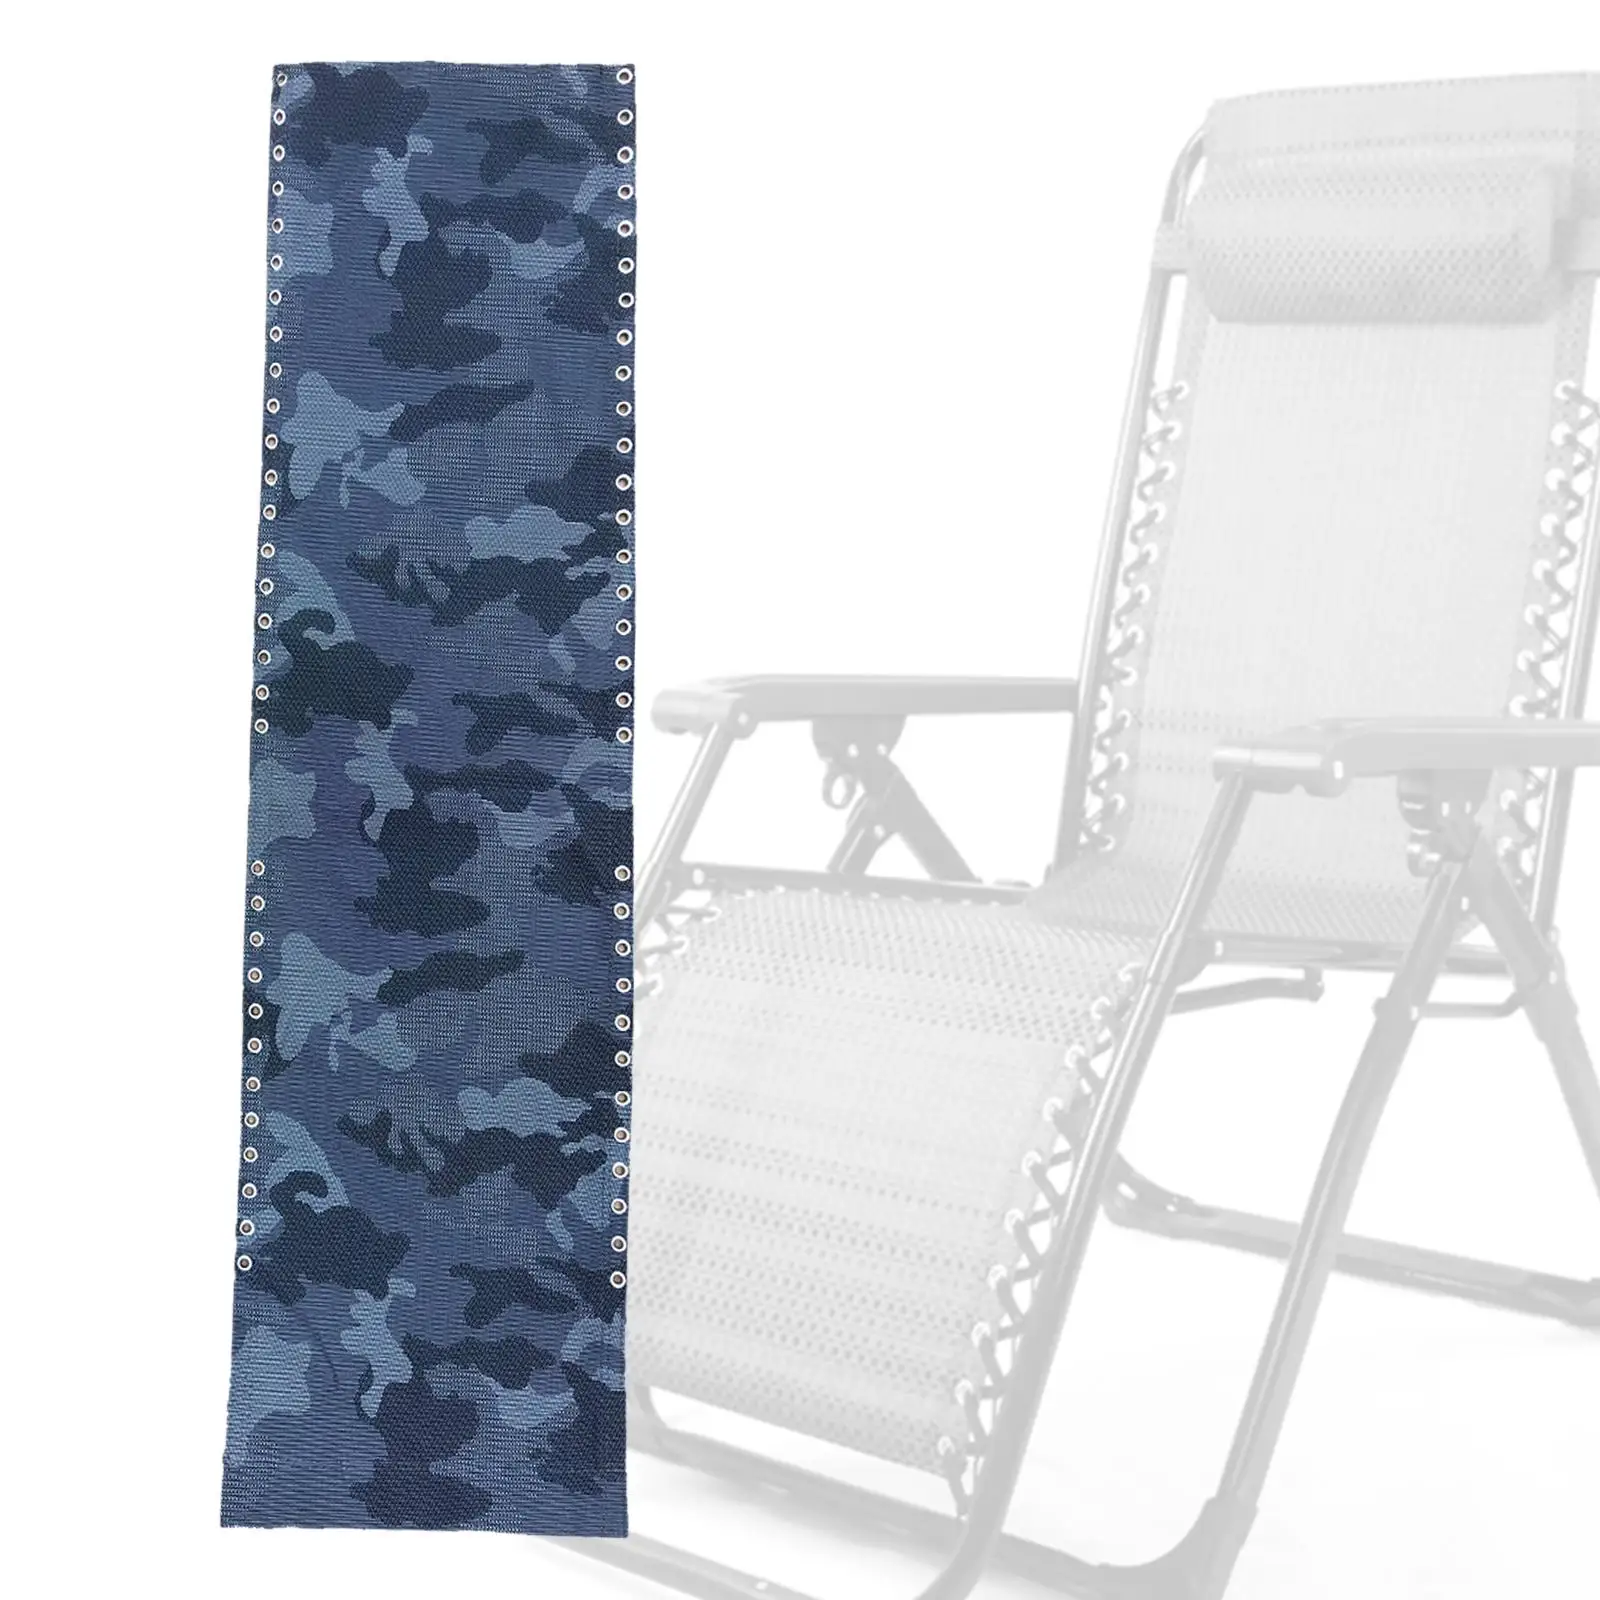 Breathable Recliner Chair Cloth Lounger Replacement Cloth Lounge Chair Cloth for Outdoor Camping Beach Folding Chair Deck Chairs